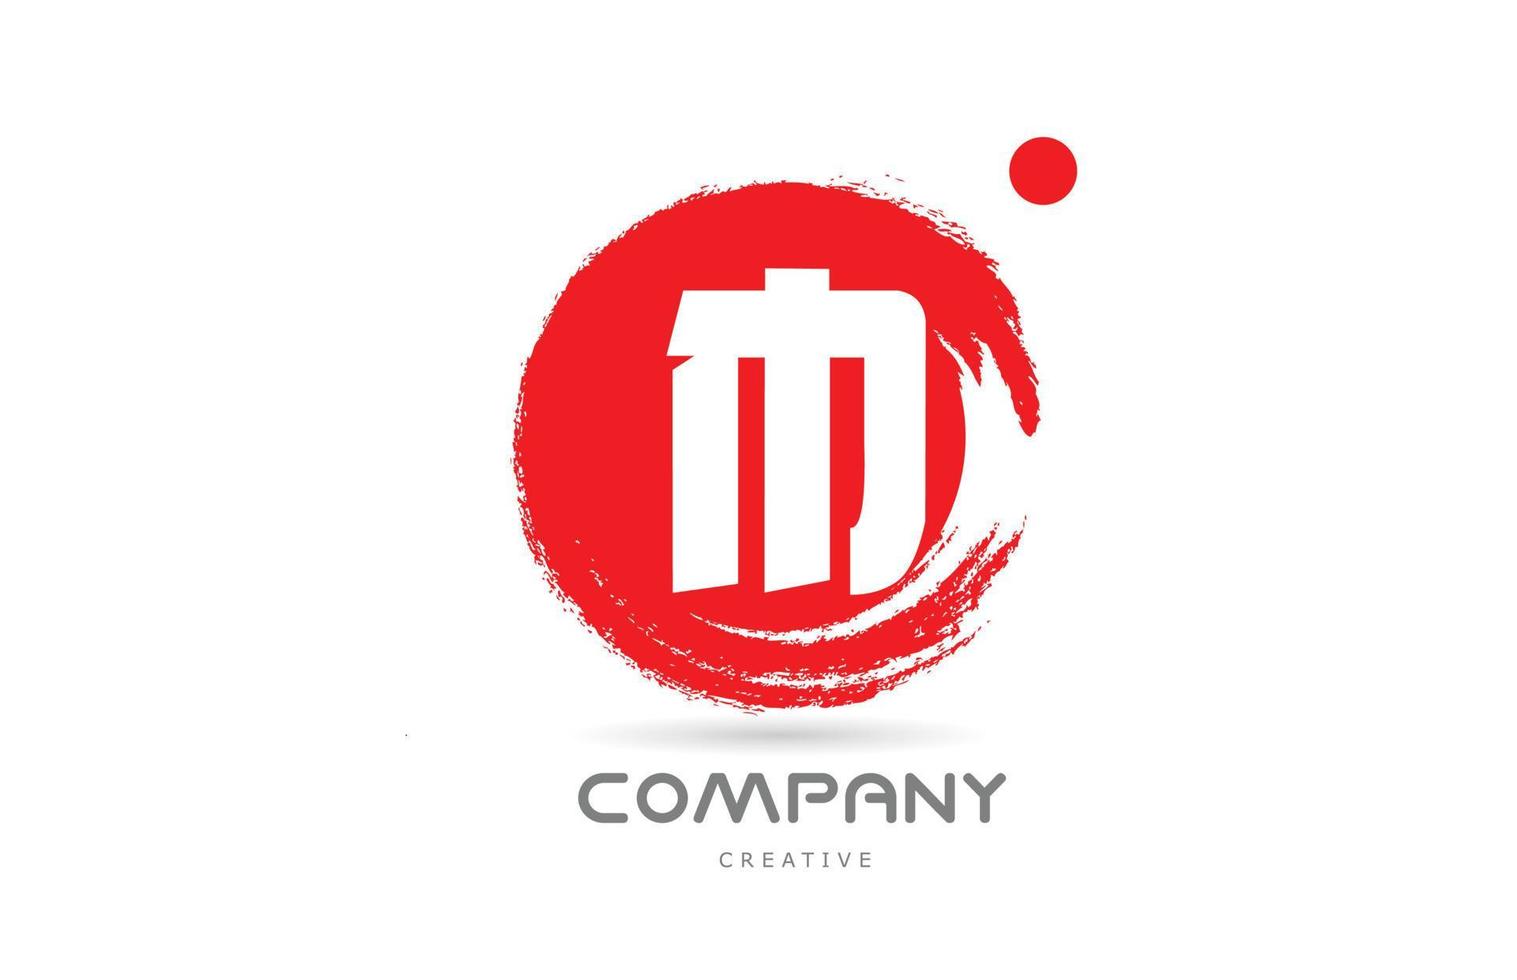 projeto do ícone do logotipo da letra do alfabeto grunge m vermelho com letras de estilo japonês. modelo criativo para negócios e empresa vetor